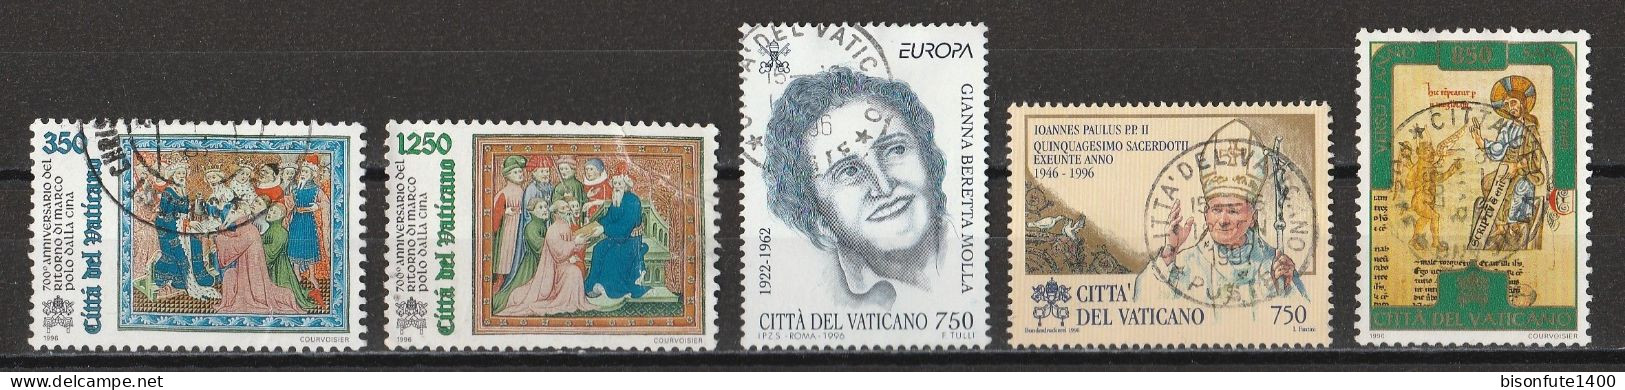 Vatican 1996 : Timbres Yvert & Tellier N° 1029 - 1031 - 1036 - 1044 - 1047 Et 1049 Oblitérés - Gebruikt